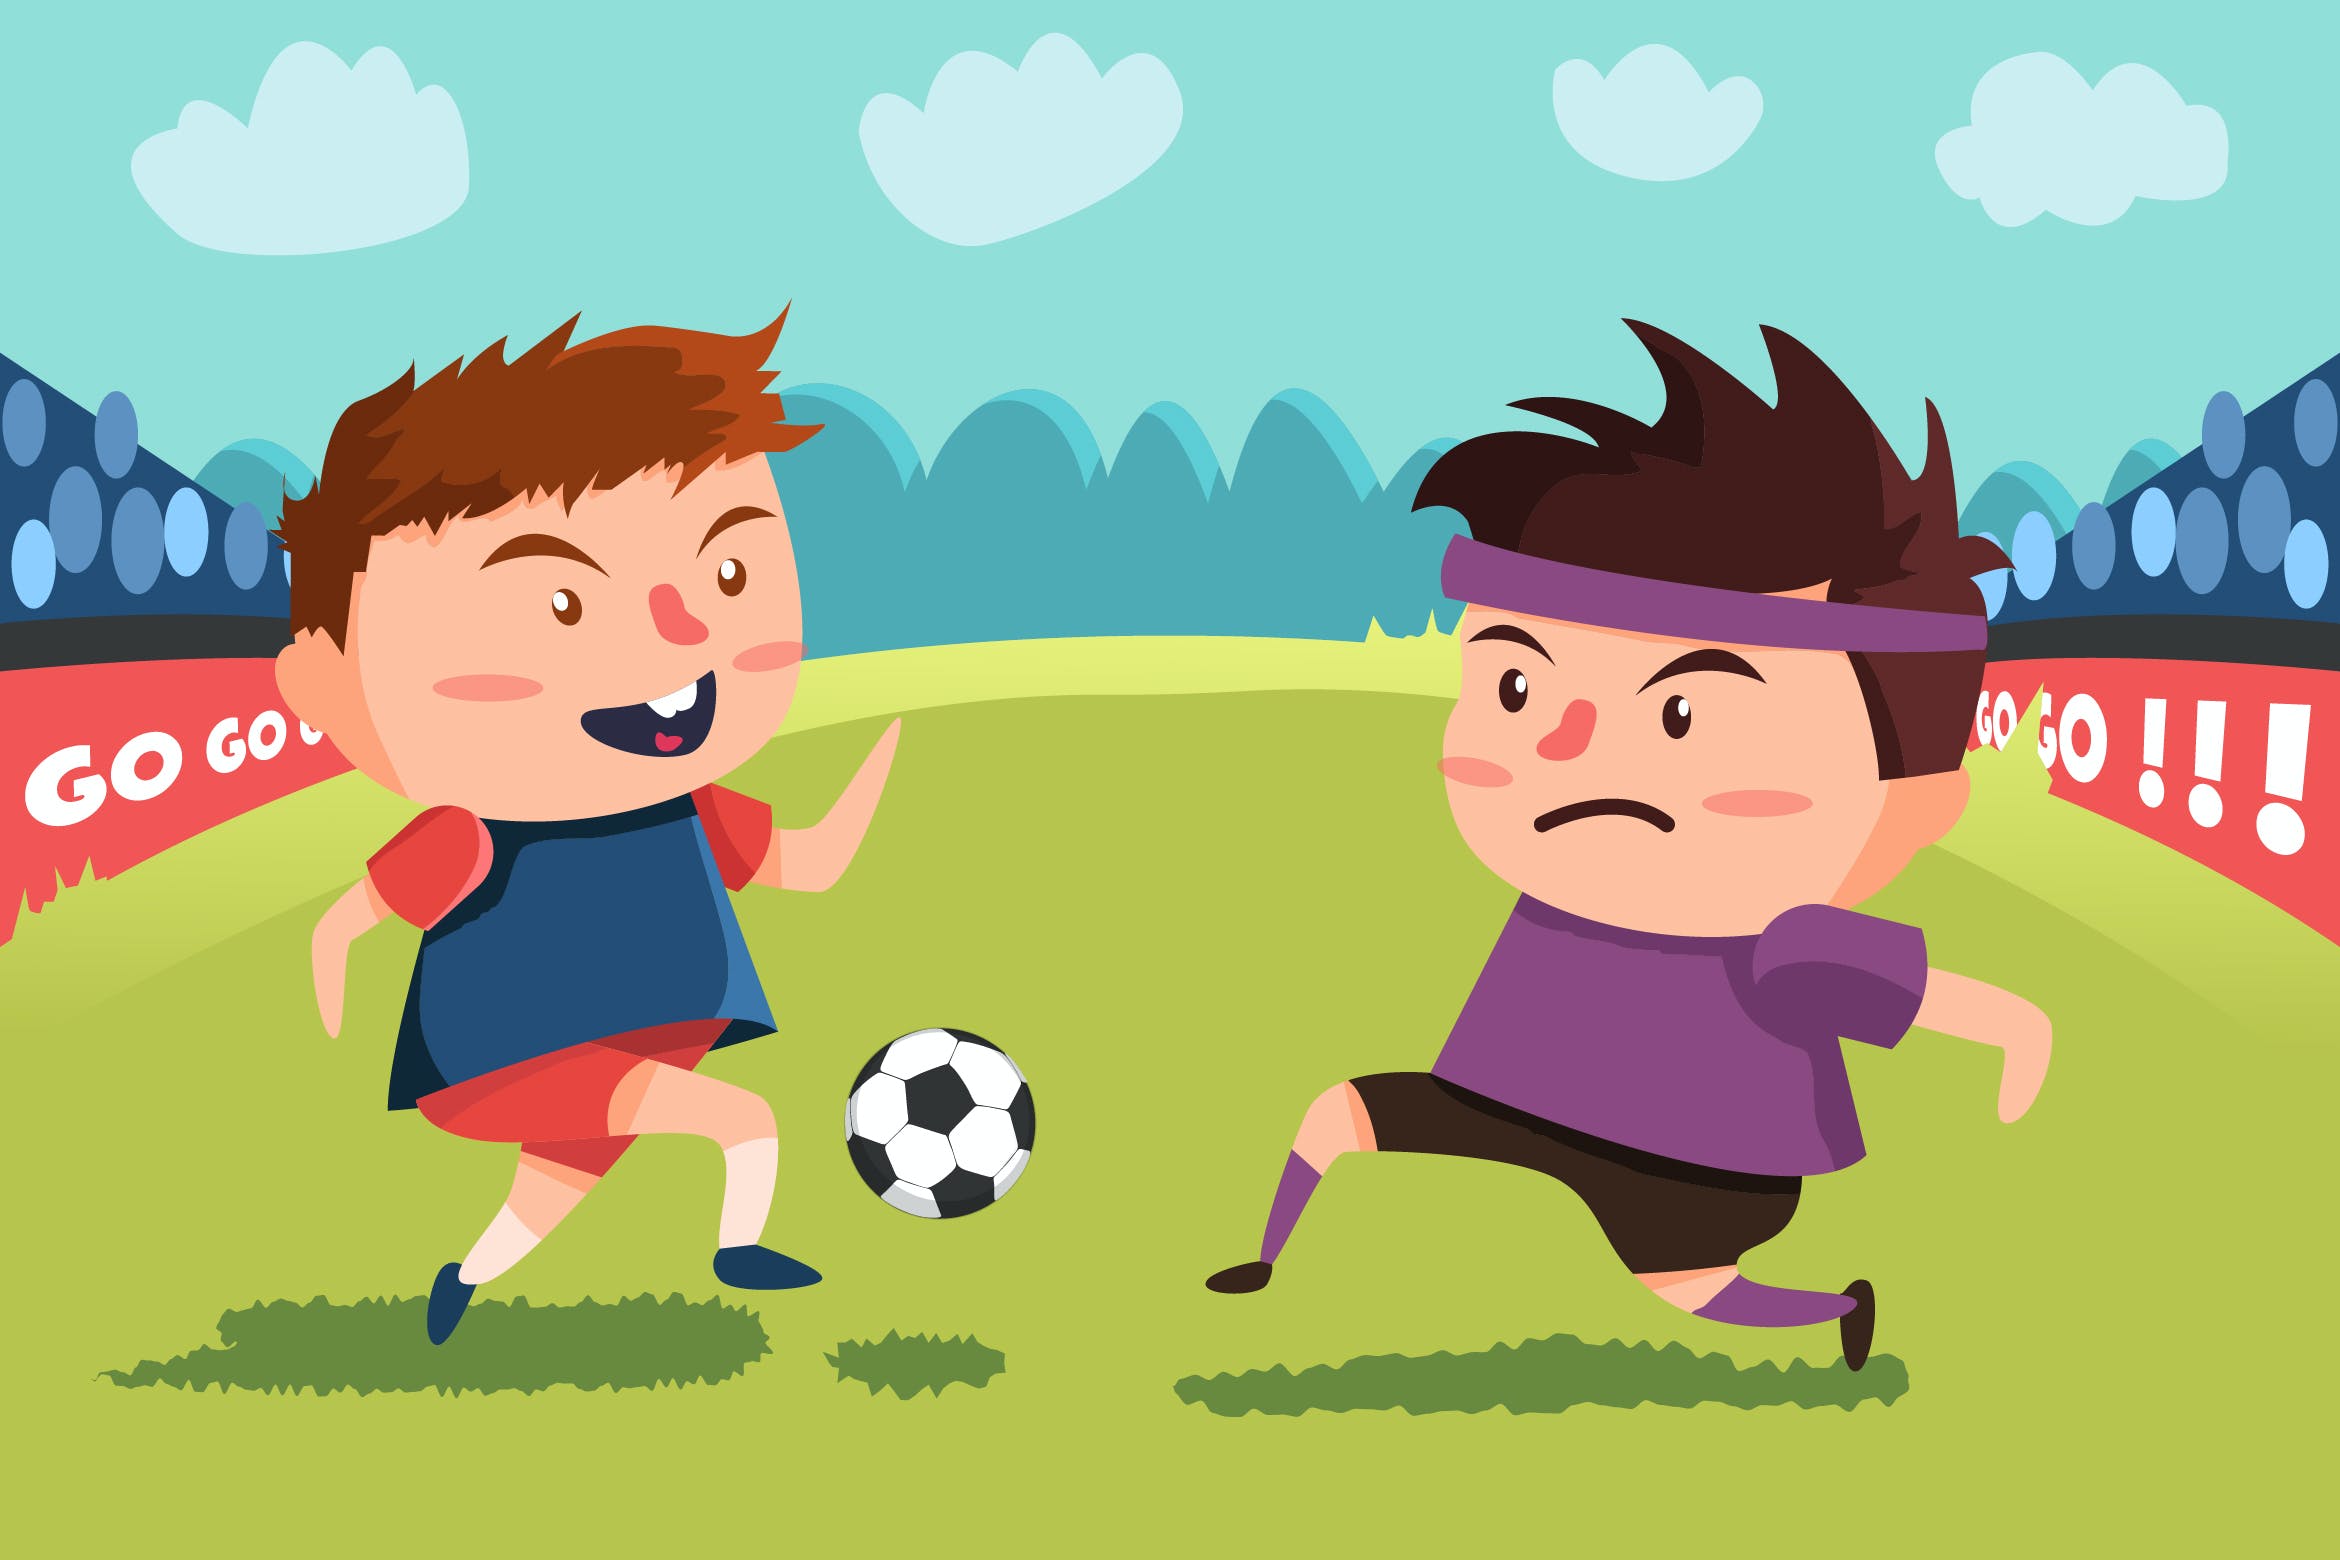 足球运动场景卡通手绘插画设计素材v1playingfootball–vector